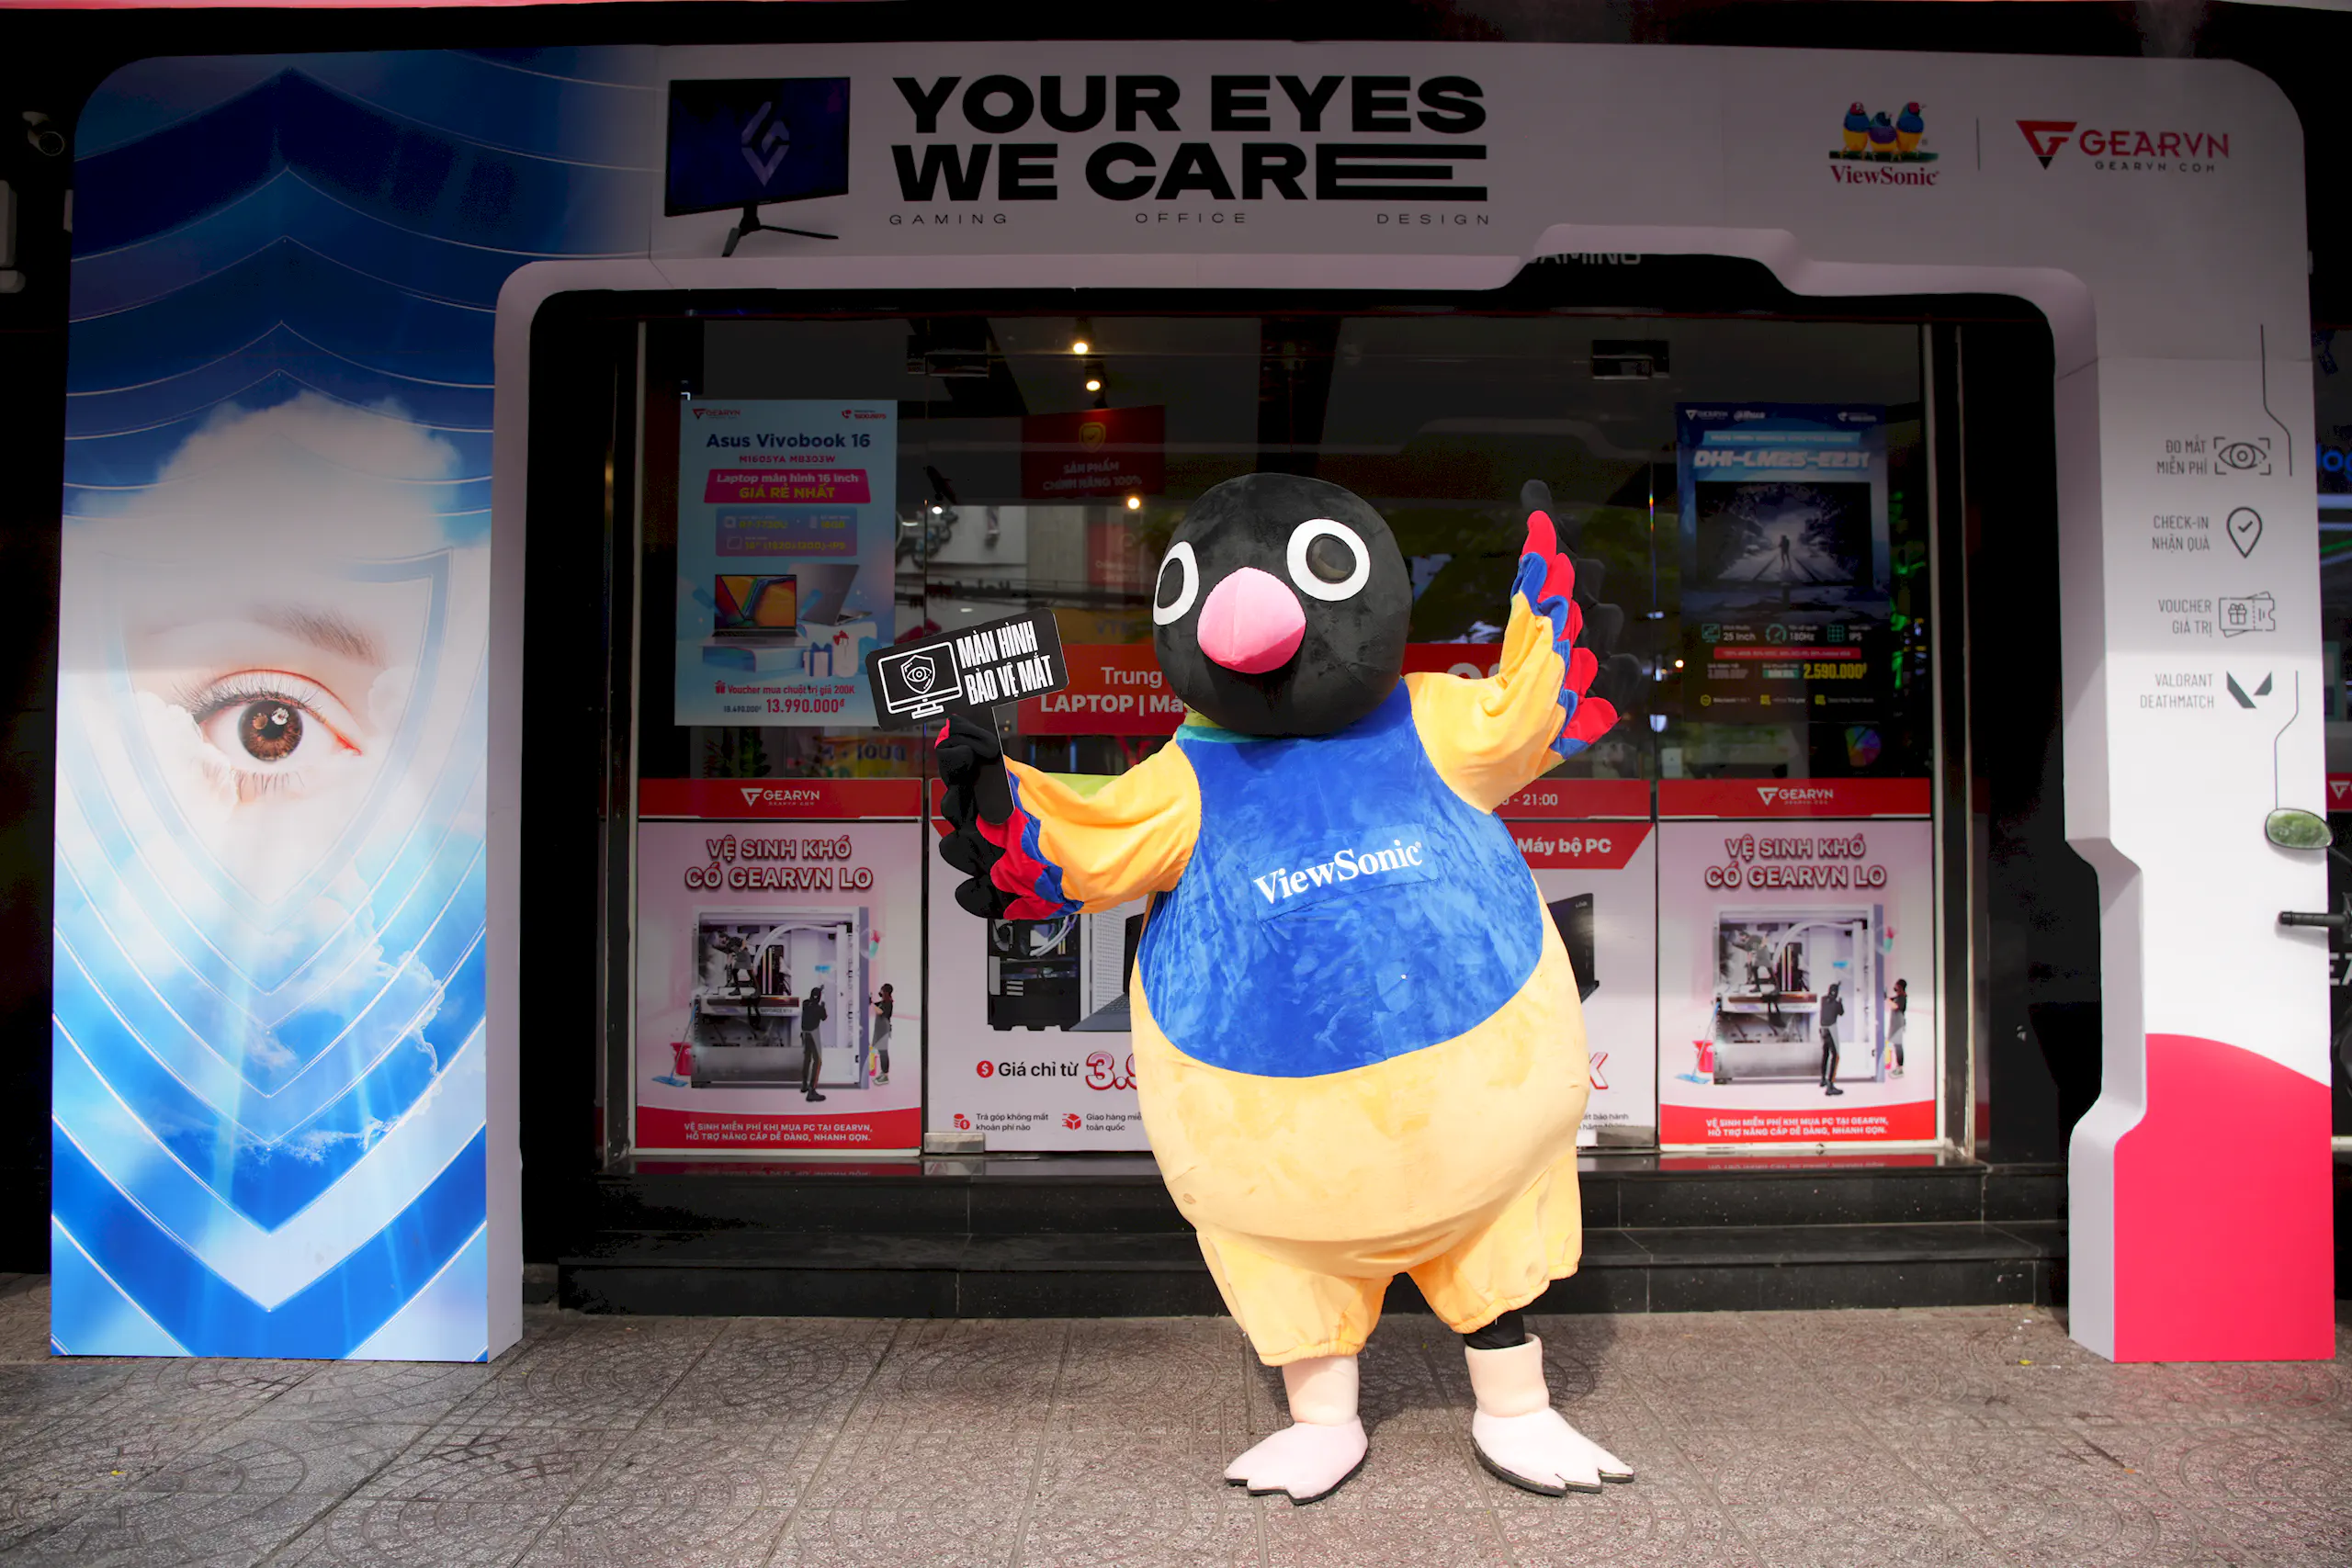 ViewSonic phát động chiến dịch bảo vệ mắt ‘Your Eyes We Care’ tại Hà Nội và TP.HCM